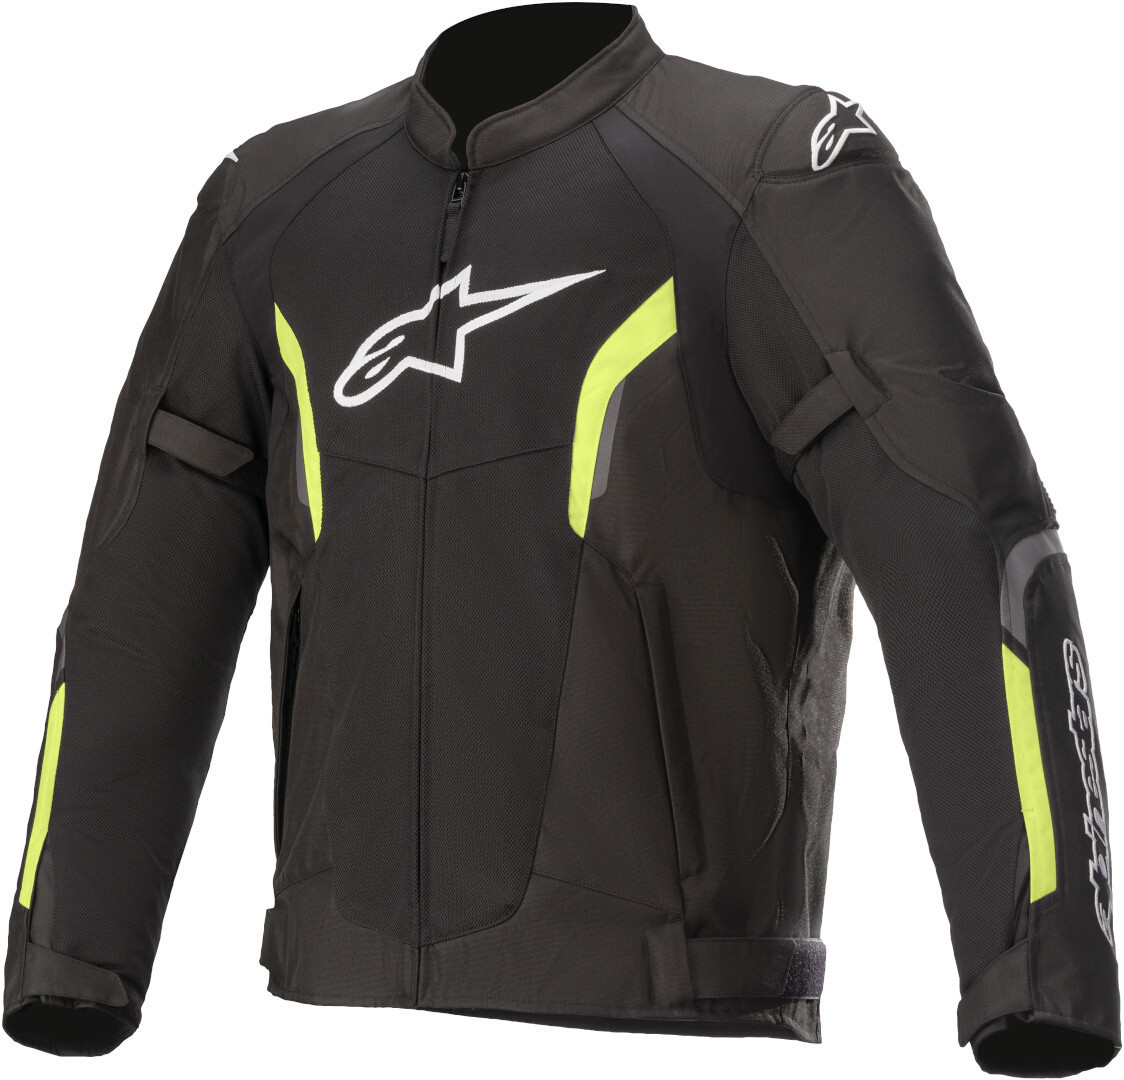 Куртка Alpinestars AST-1 V2 Air мотоциклетная текстильная, черно-желтая